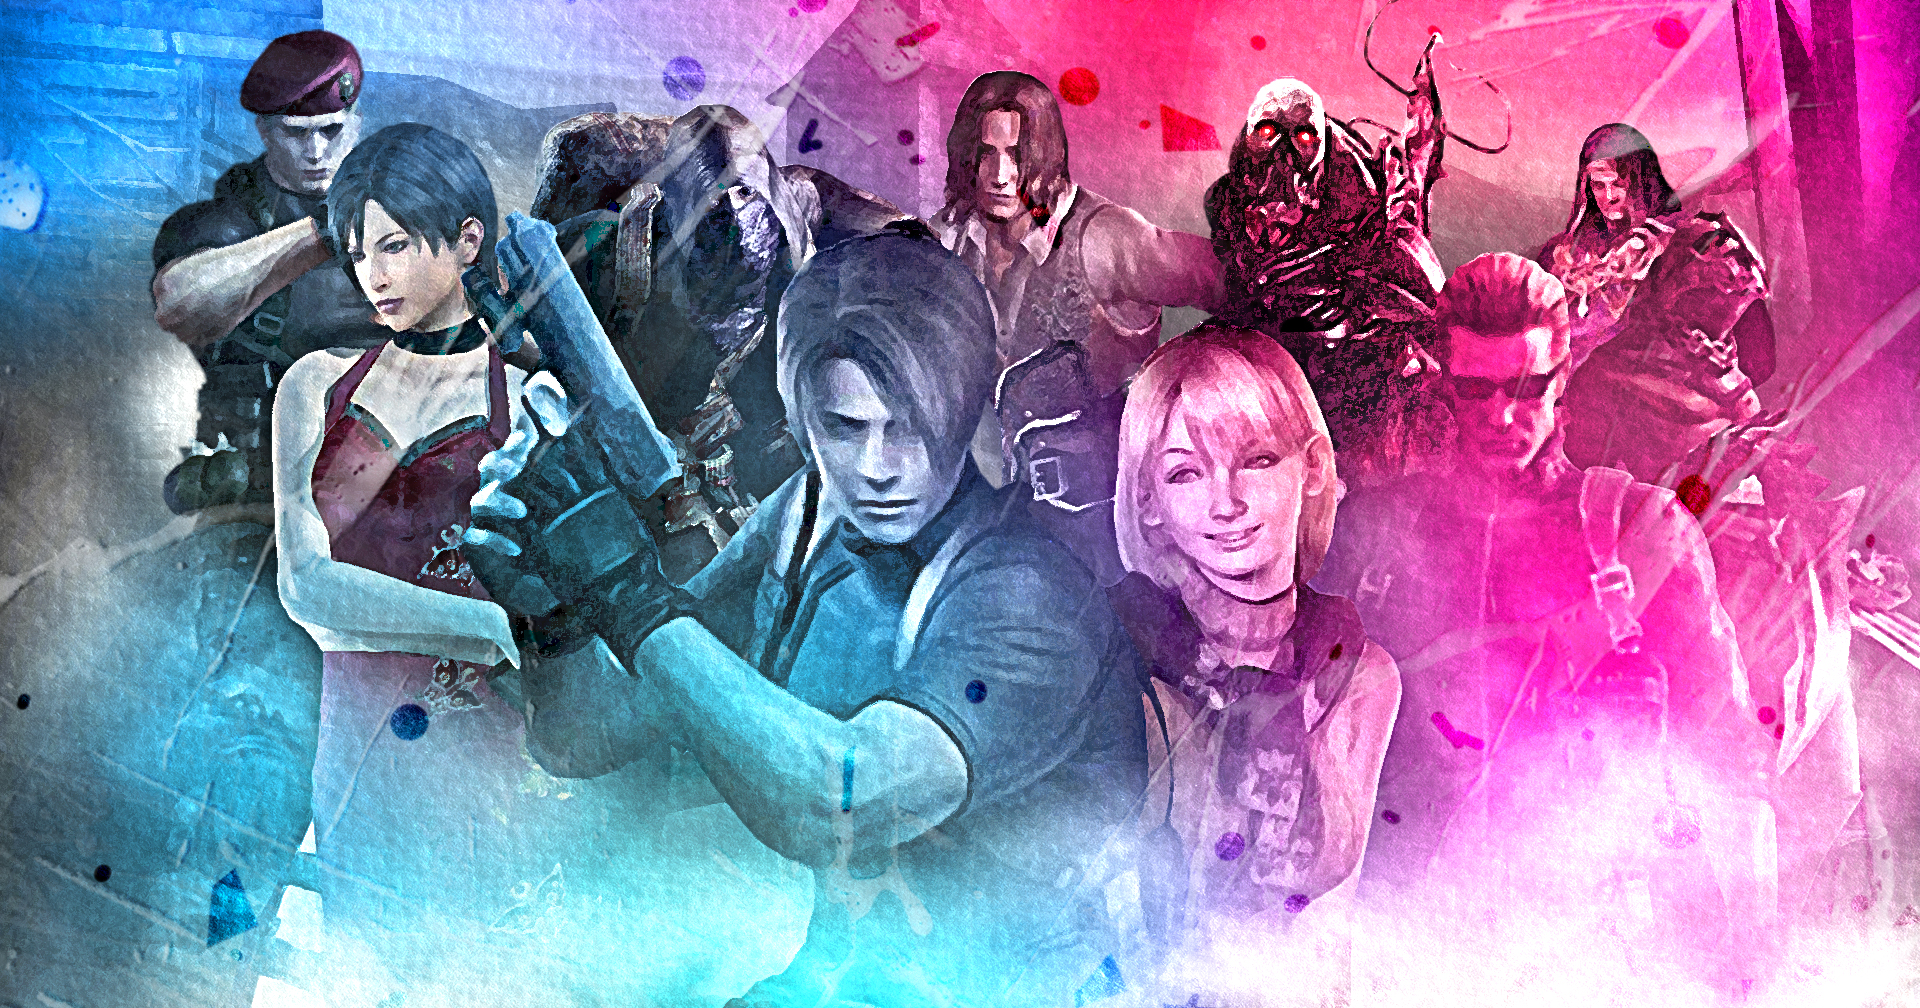 ย้อนอดีต 17 ปี Resident Evil 4 ความหลอนที่หลายคนยังจดจำ